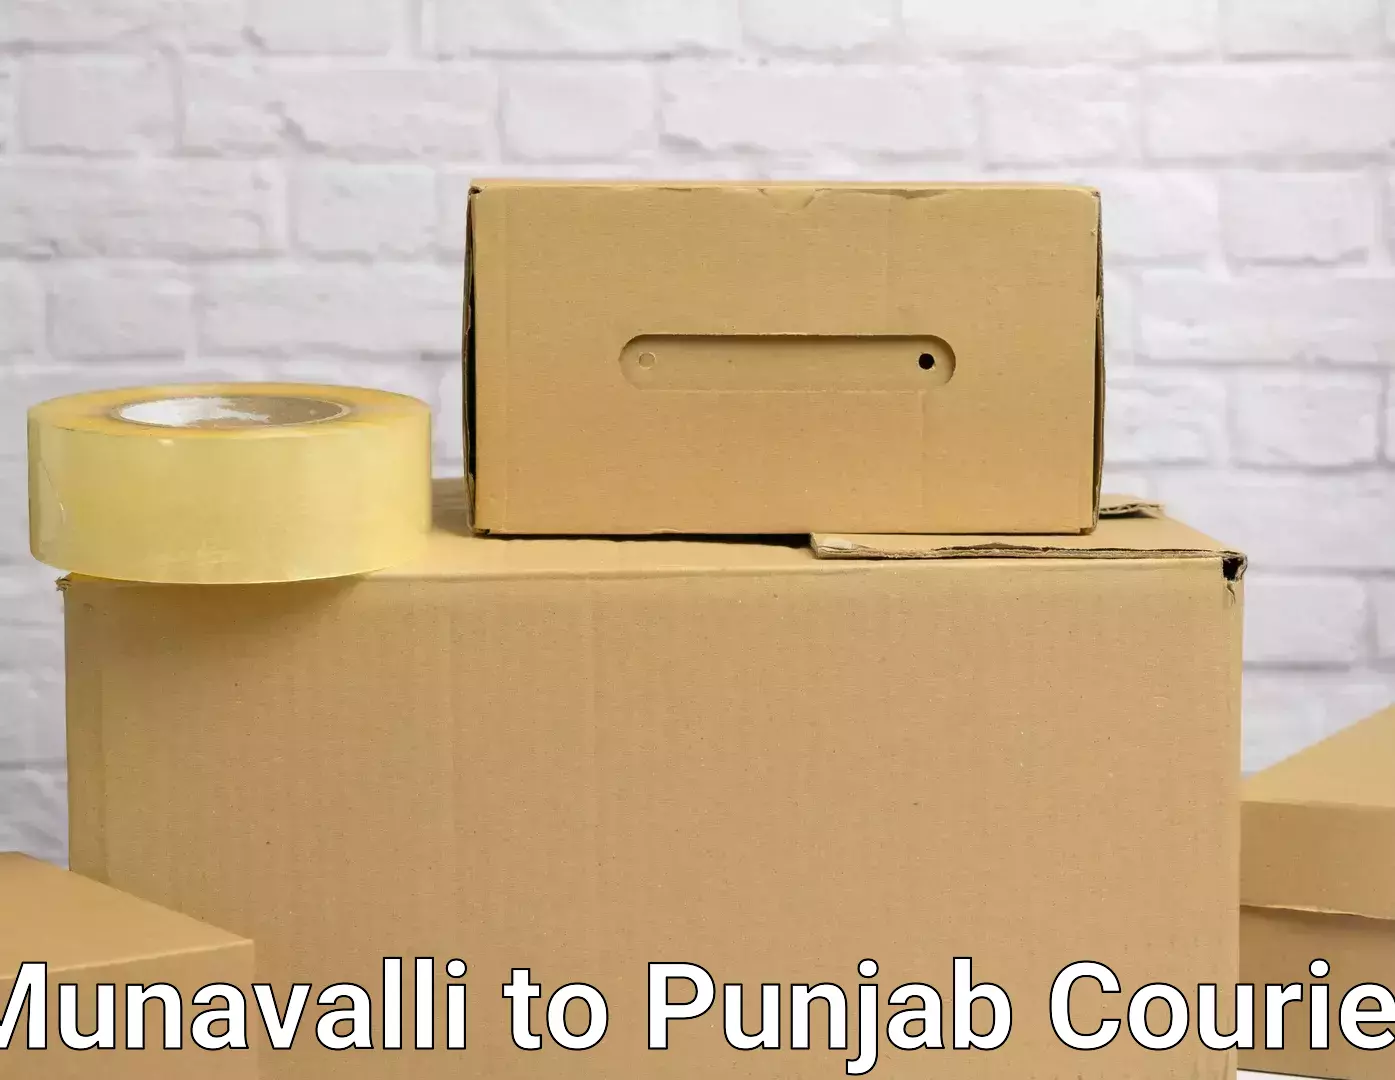 Home furniture relocation Munavalli to Punjab